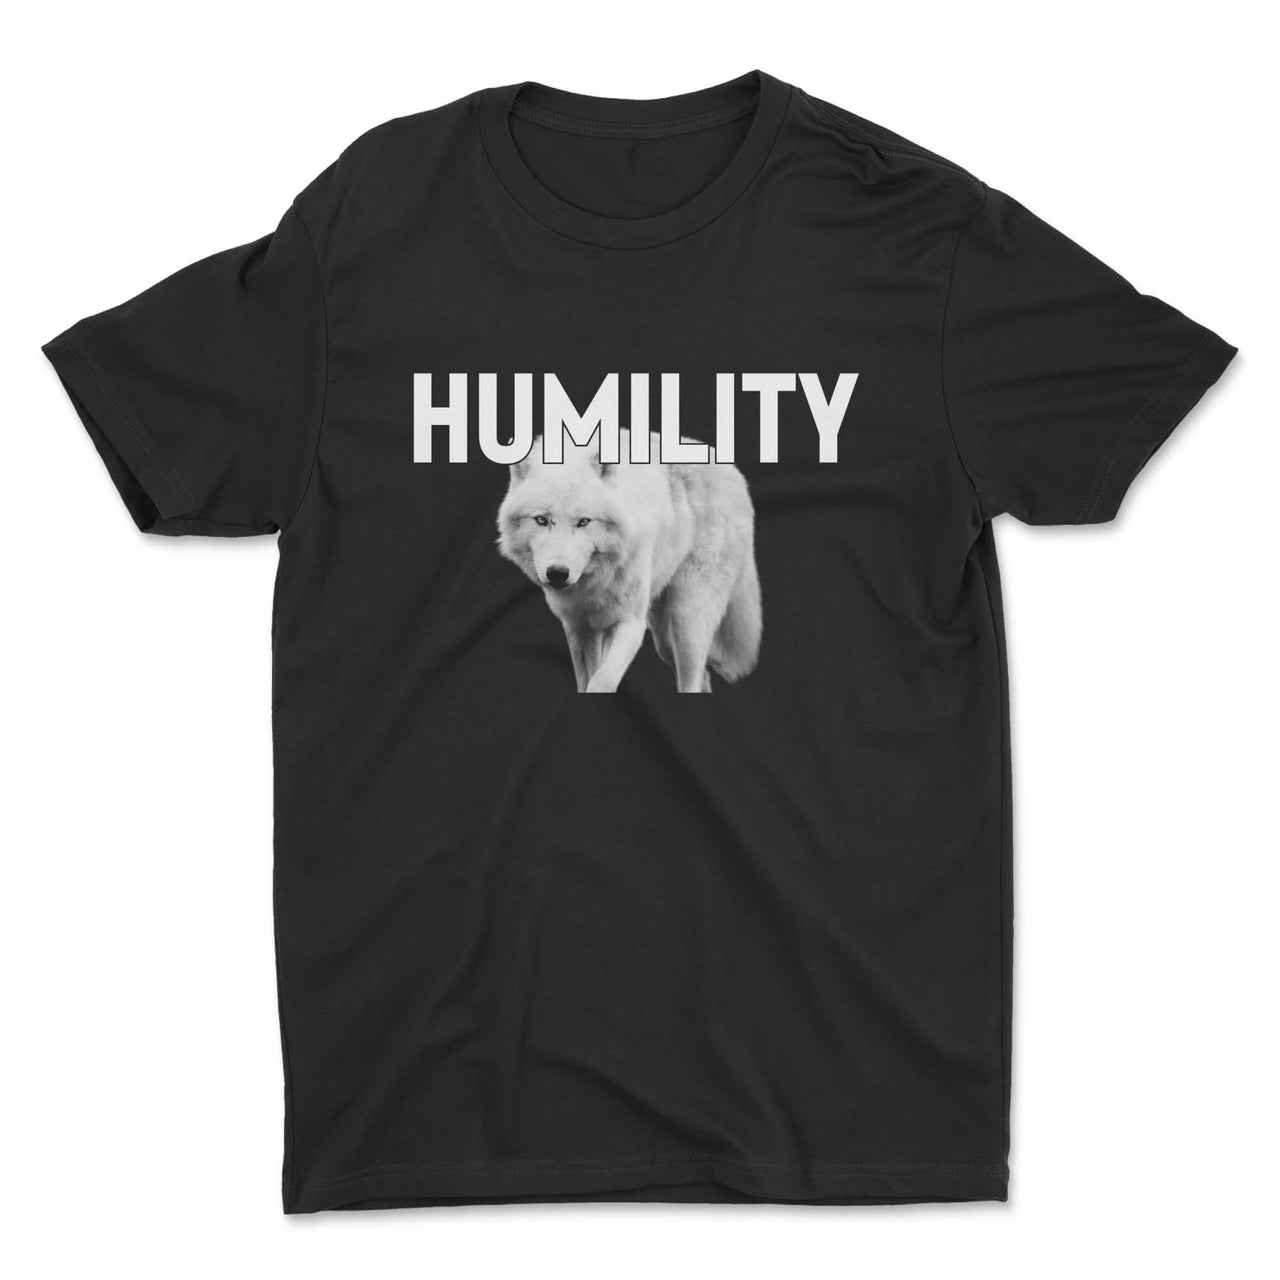 Humility Tee